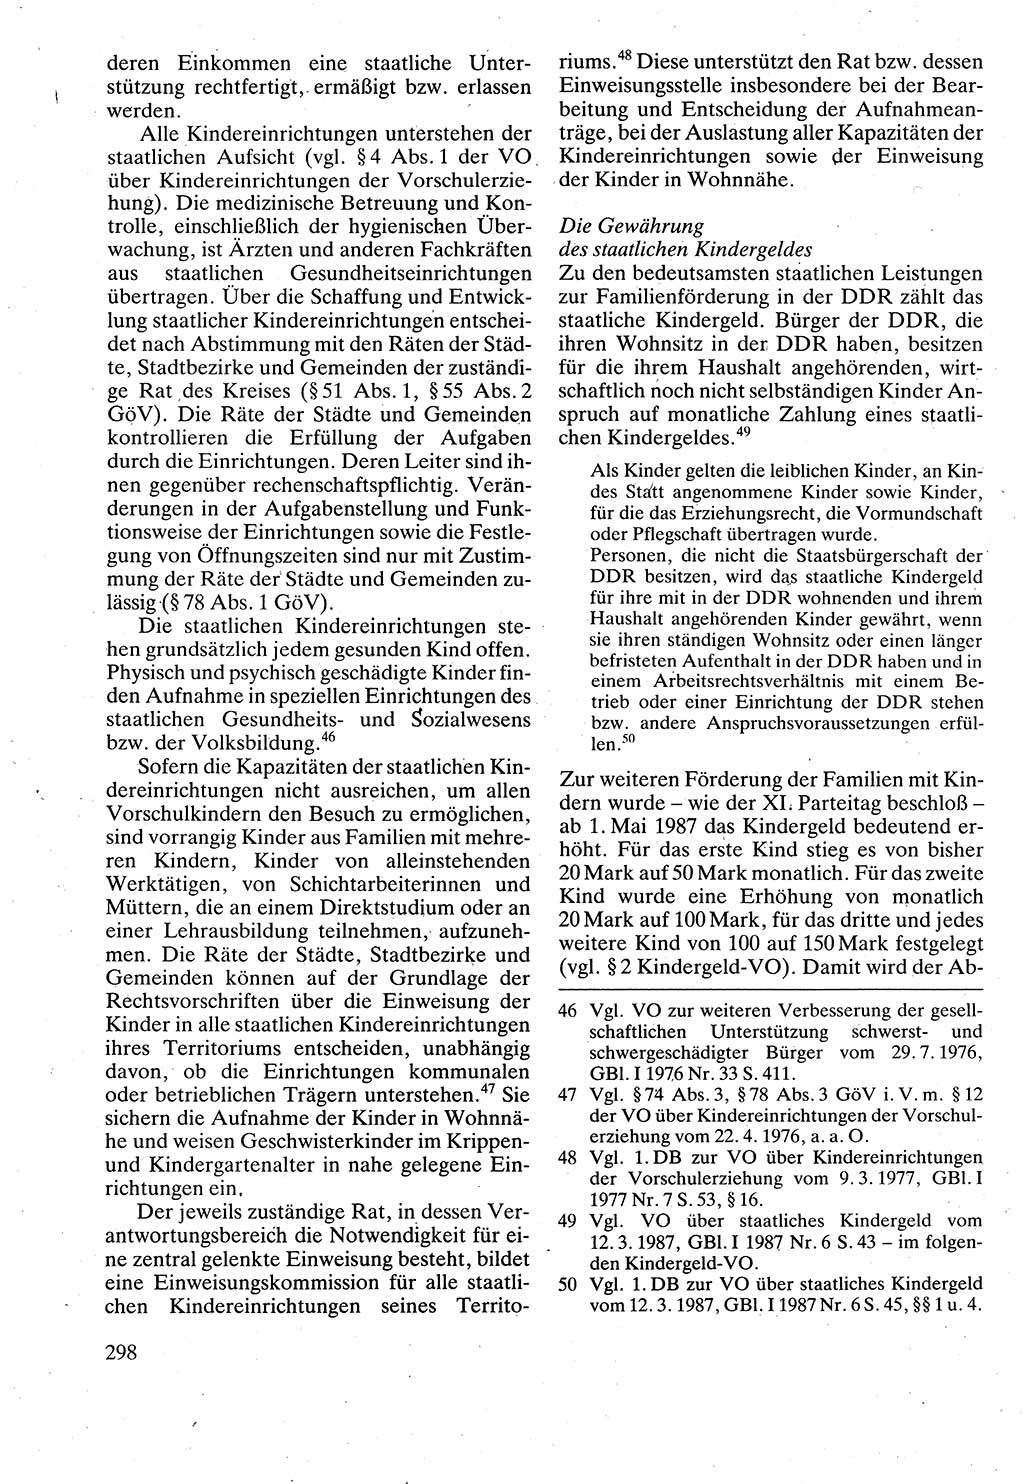 Verwaltungsrecht [Deutsche Demokratische Republik (DDR)], Lehrbuch 1988, Seite 298 (Verw.-R. DDR Lb. 1988, S. 298)